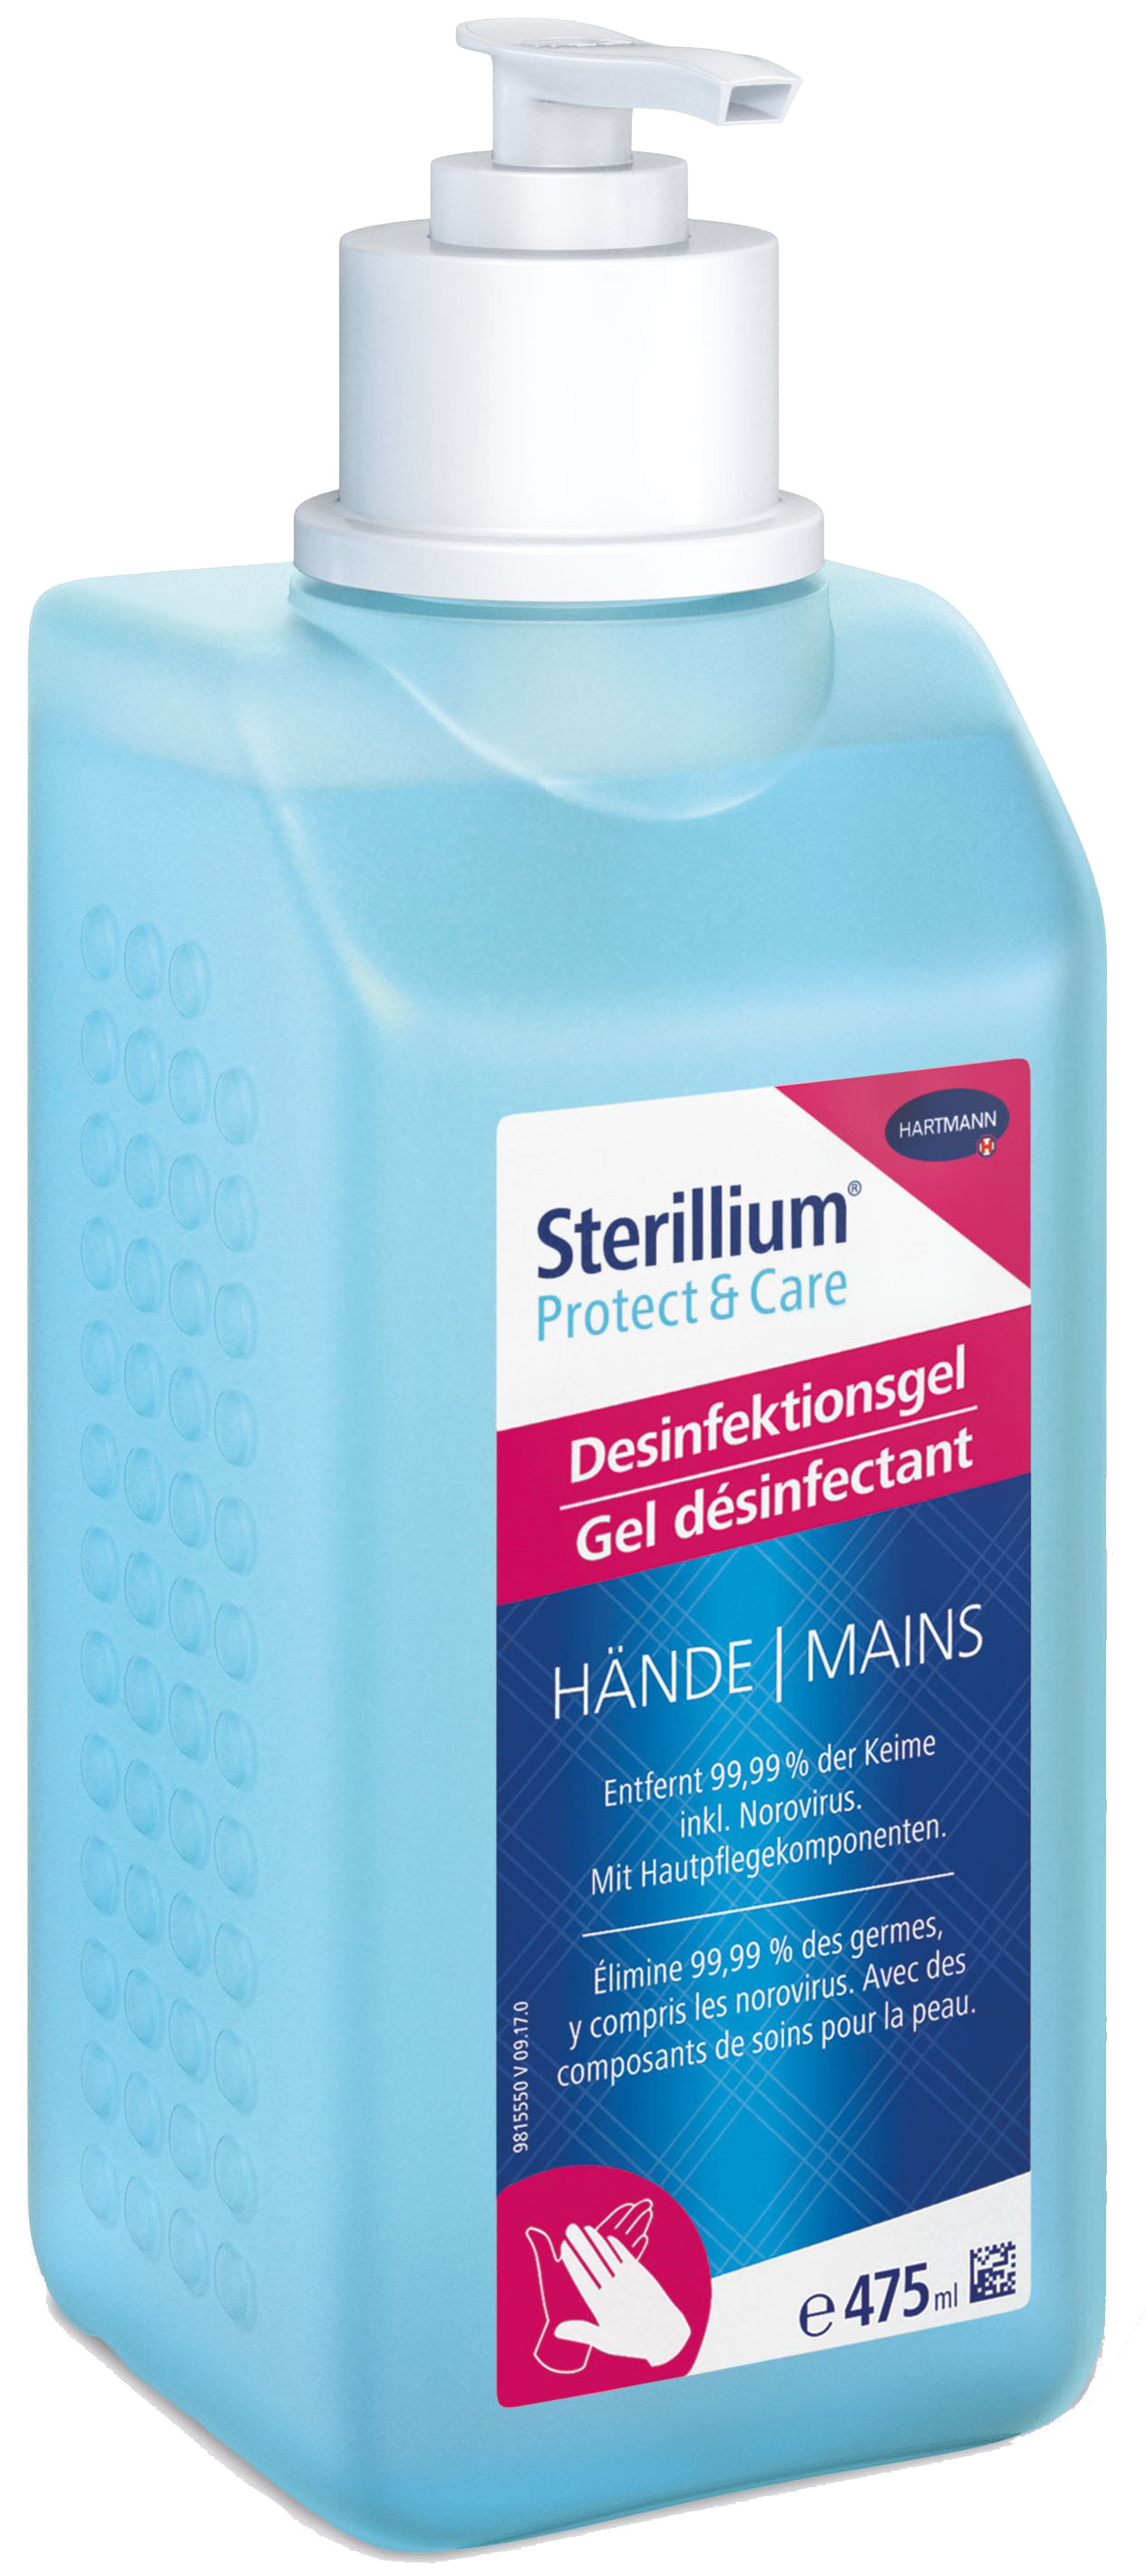 HARTMANN Désinfectant Sterilium 981613 Protect&Care, 475ml